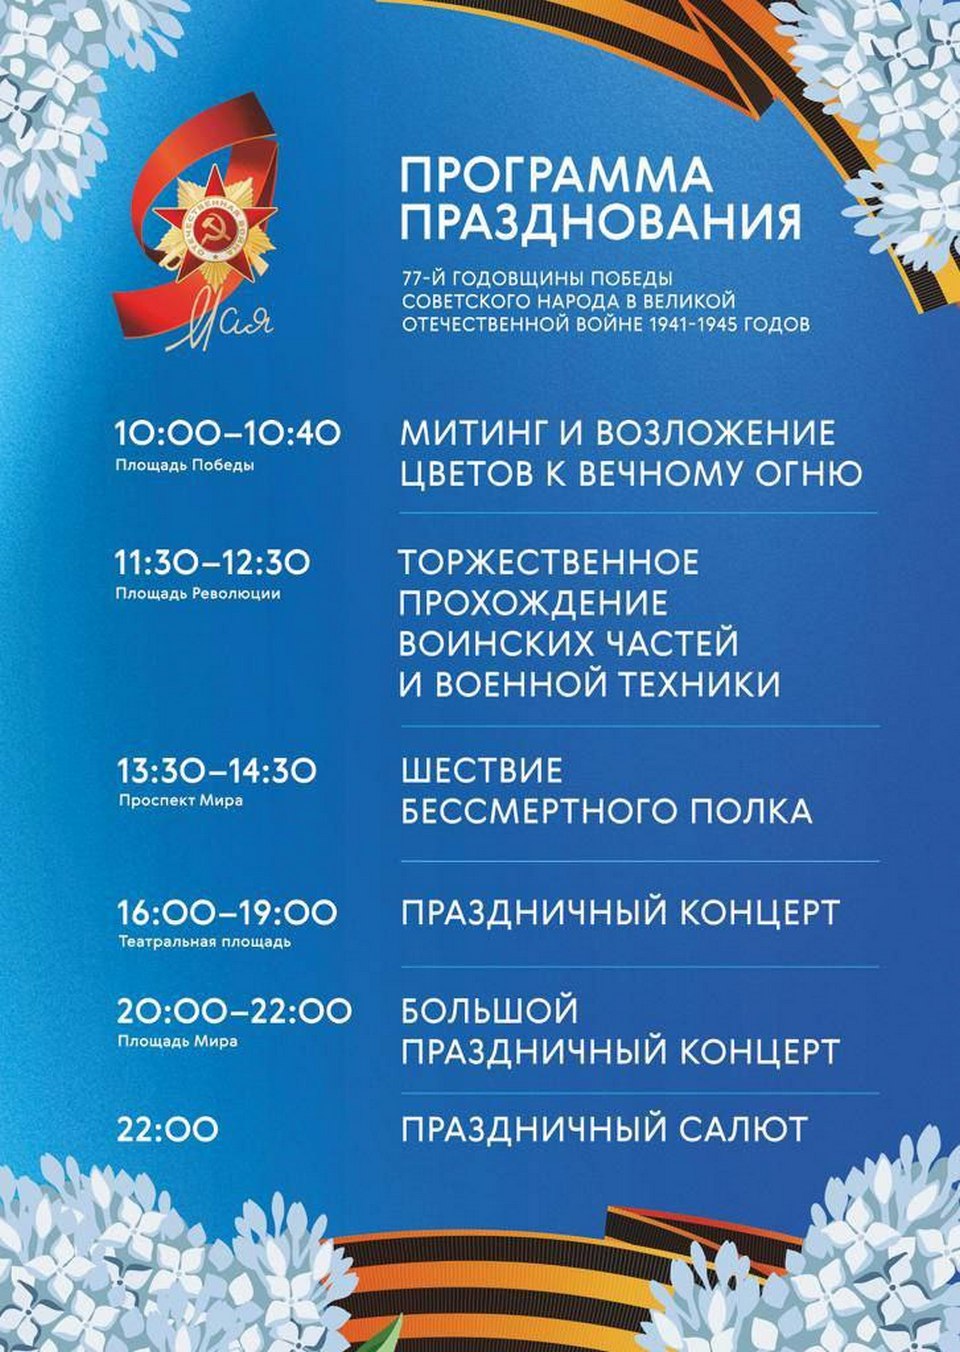 Программа Дня Победы в Красноярске